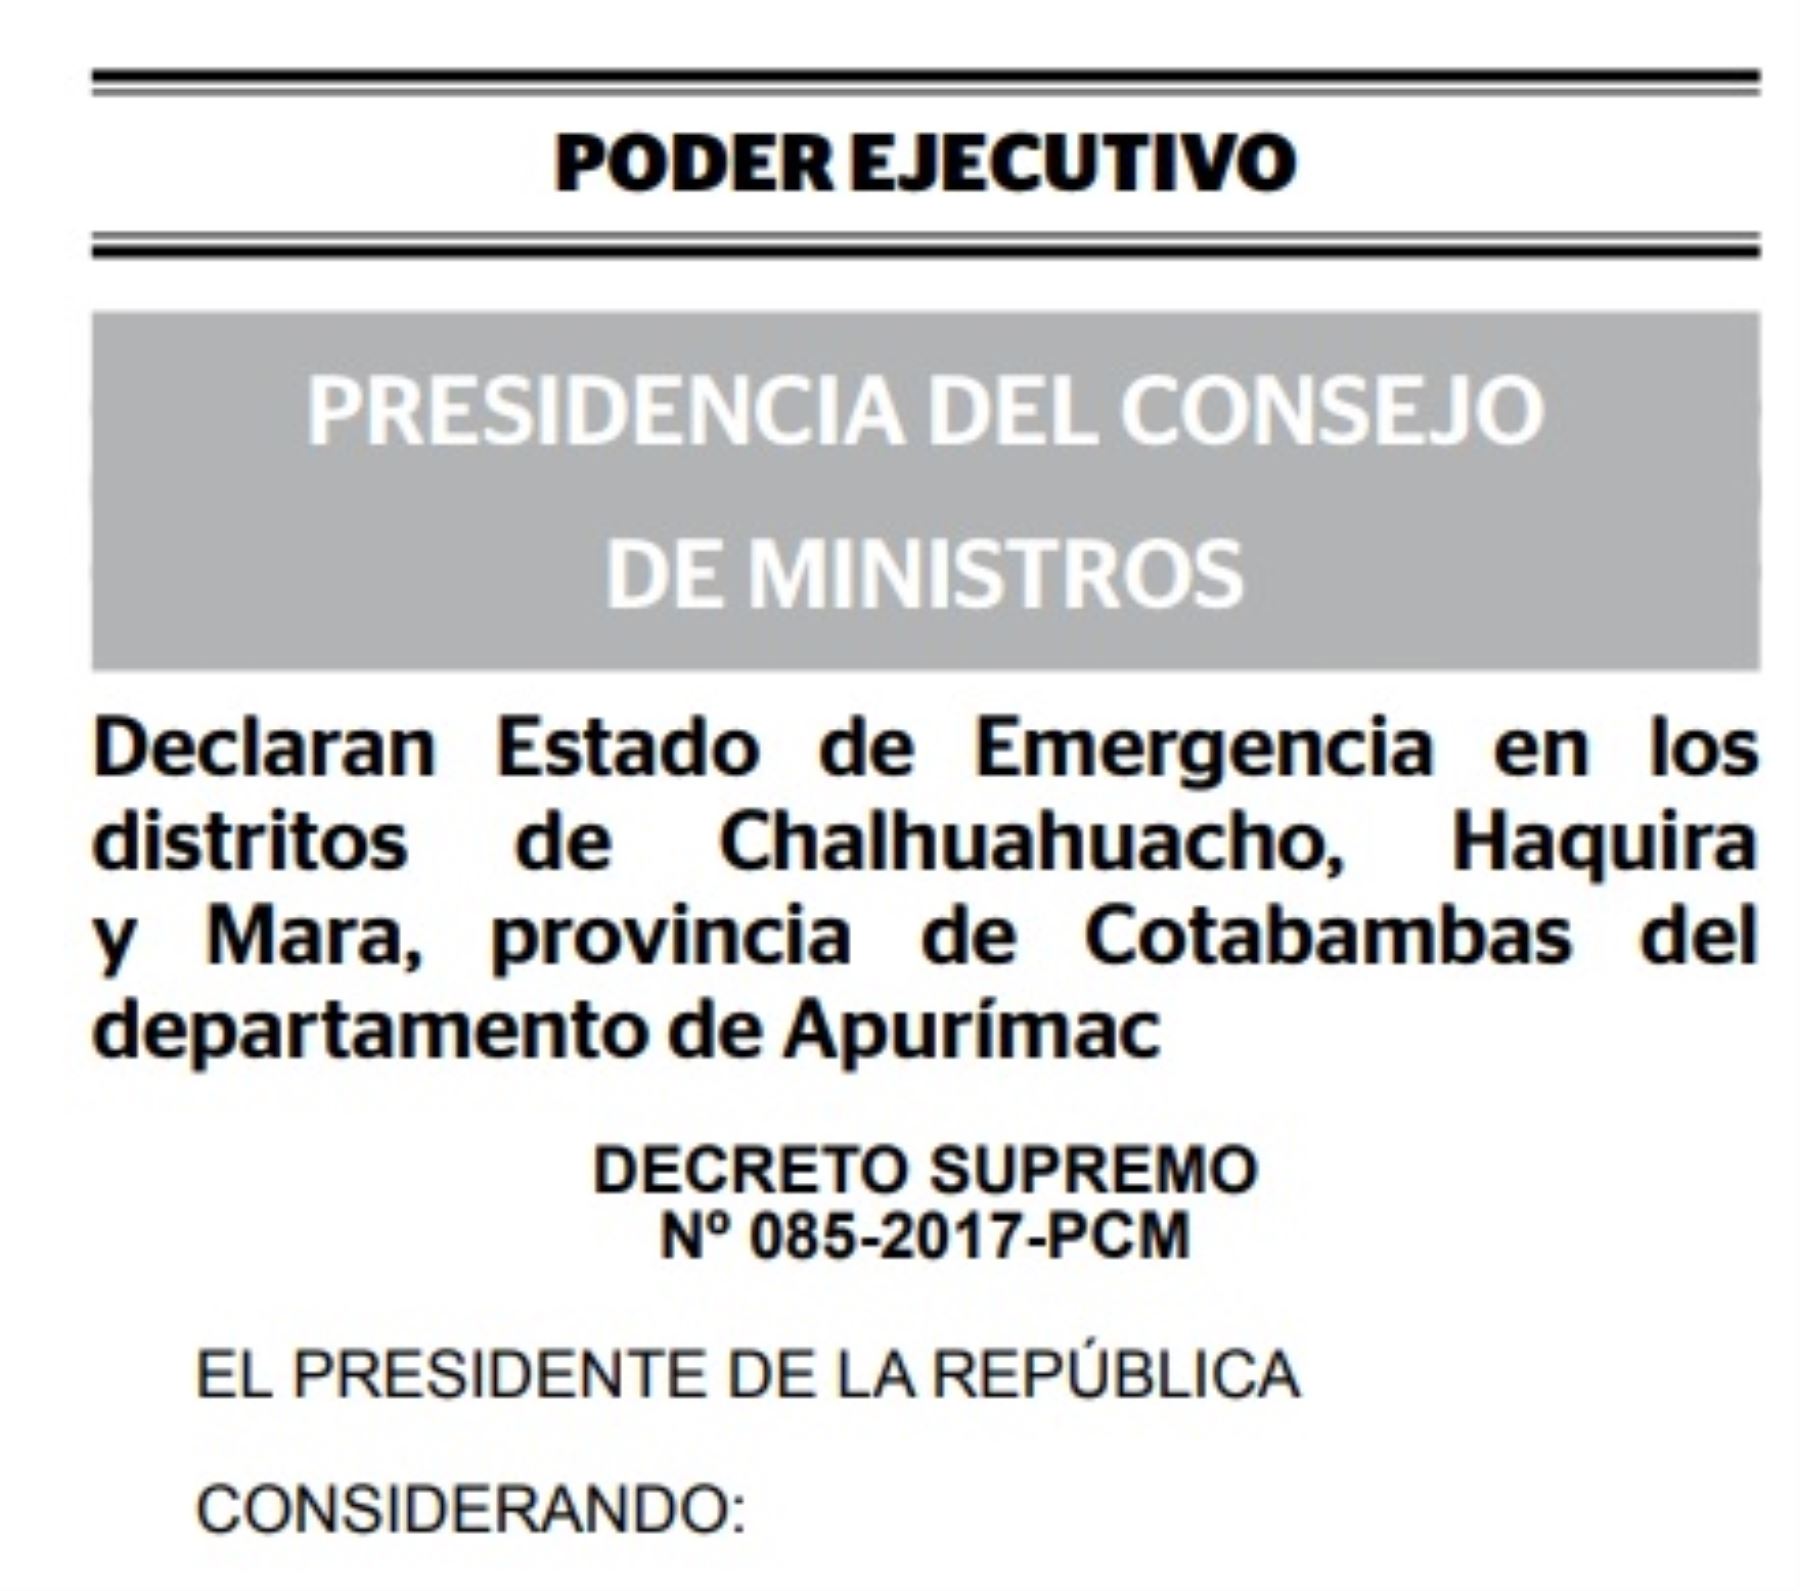 El Ejecutivo declaró, por el término de 30 días calendario, el estado de emergencia en los distritos de Chalhuahuacho, Haquira y Mara, de la provincia de Cotabambas, departamento de Apurímac, para restablecer y garantizar el orden interno.